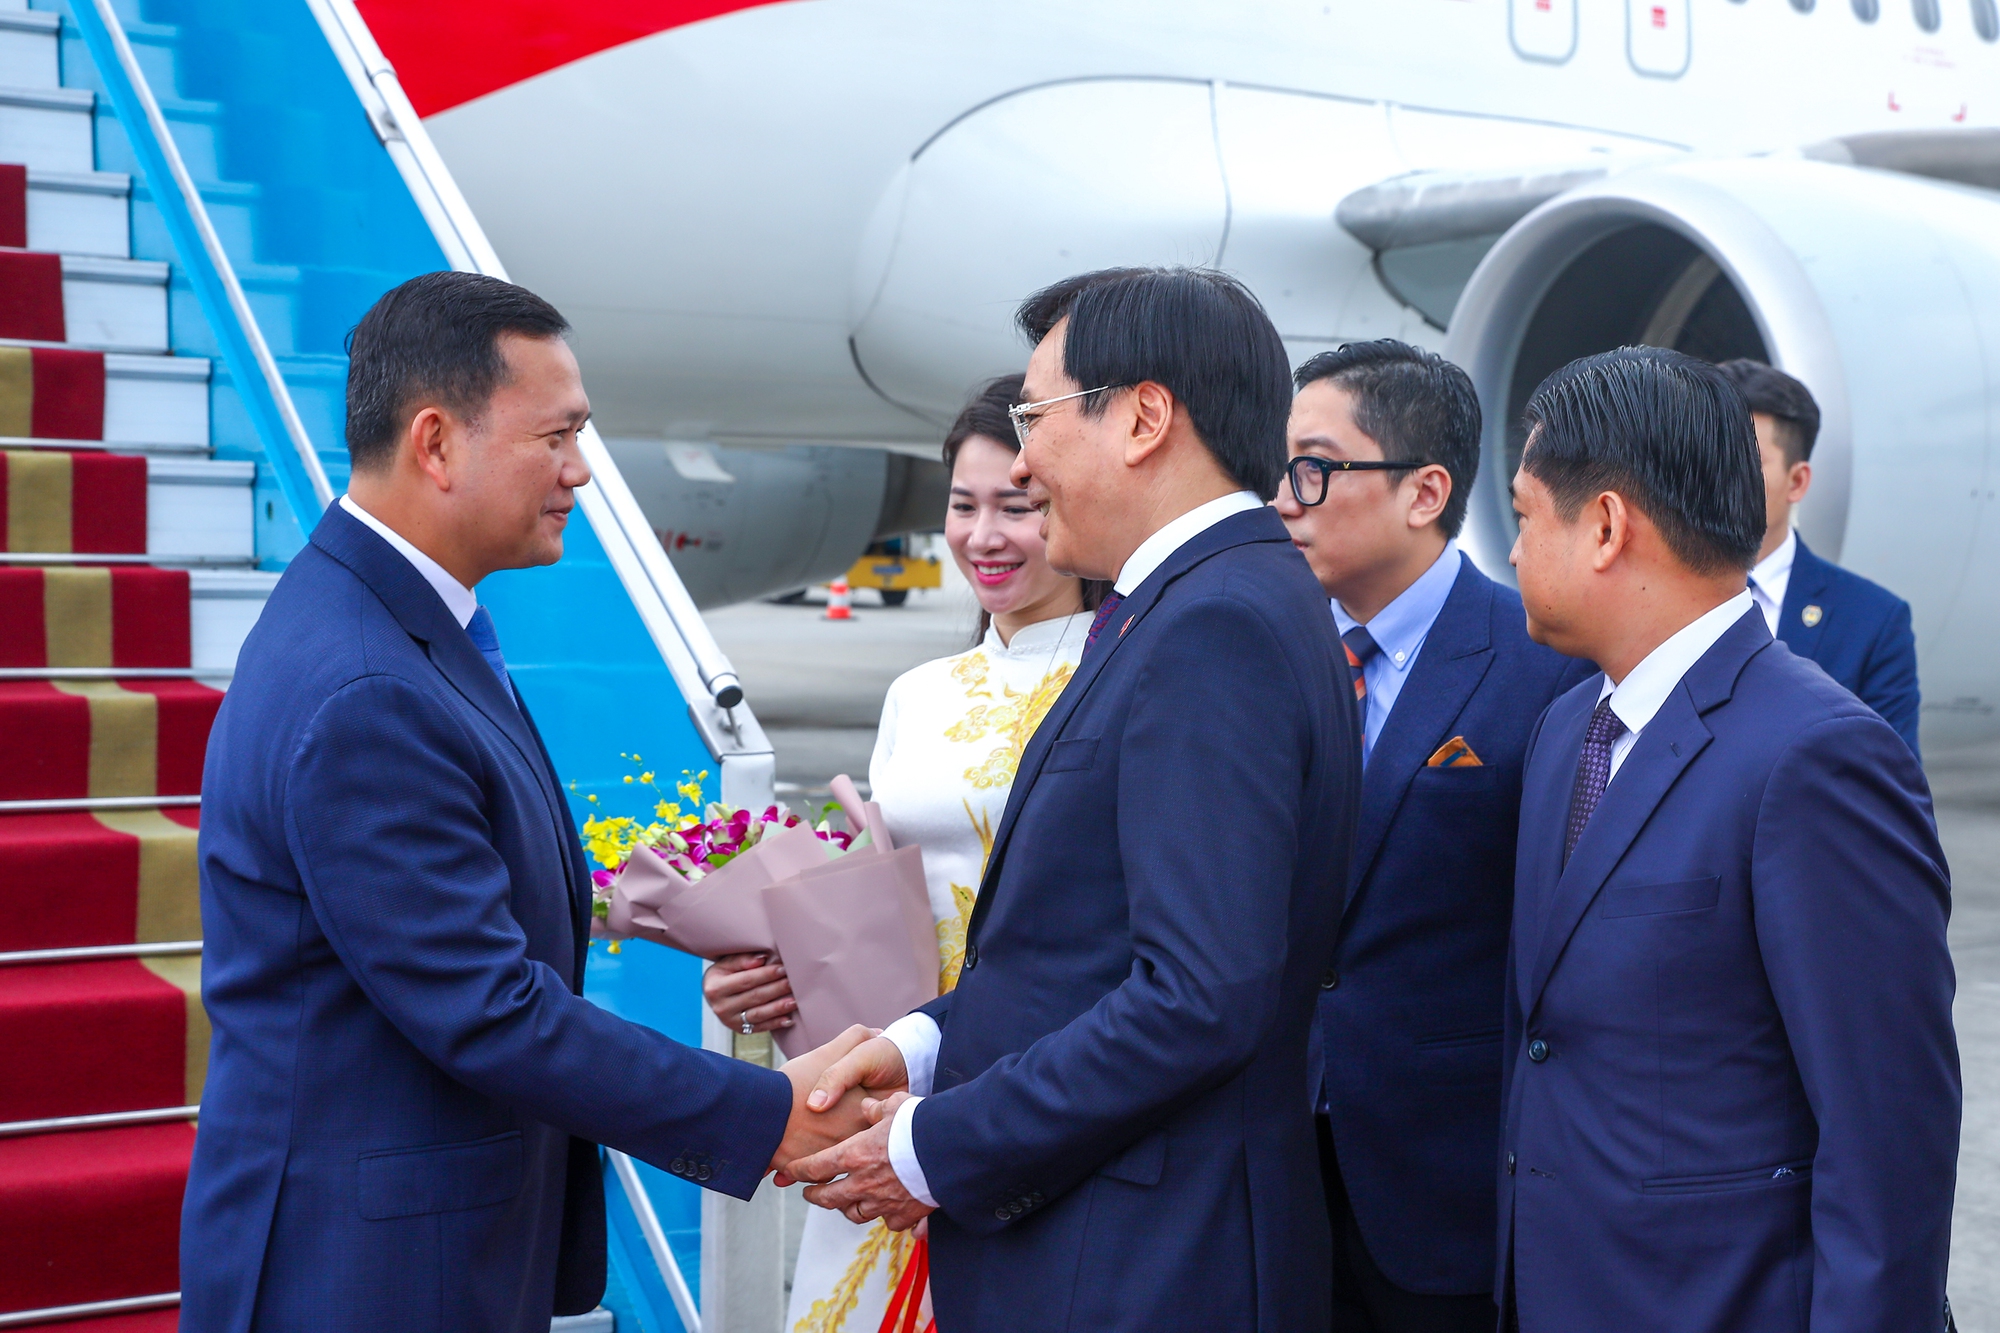 Chùm ảnh: Thủ tướng Phạm Minh Chính chủ trì lễ đón và hội đàm với Thủ tướng Campuchia- Ảnh 9.